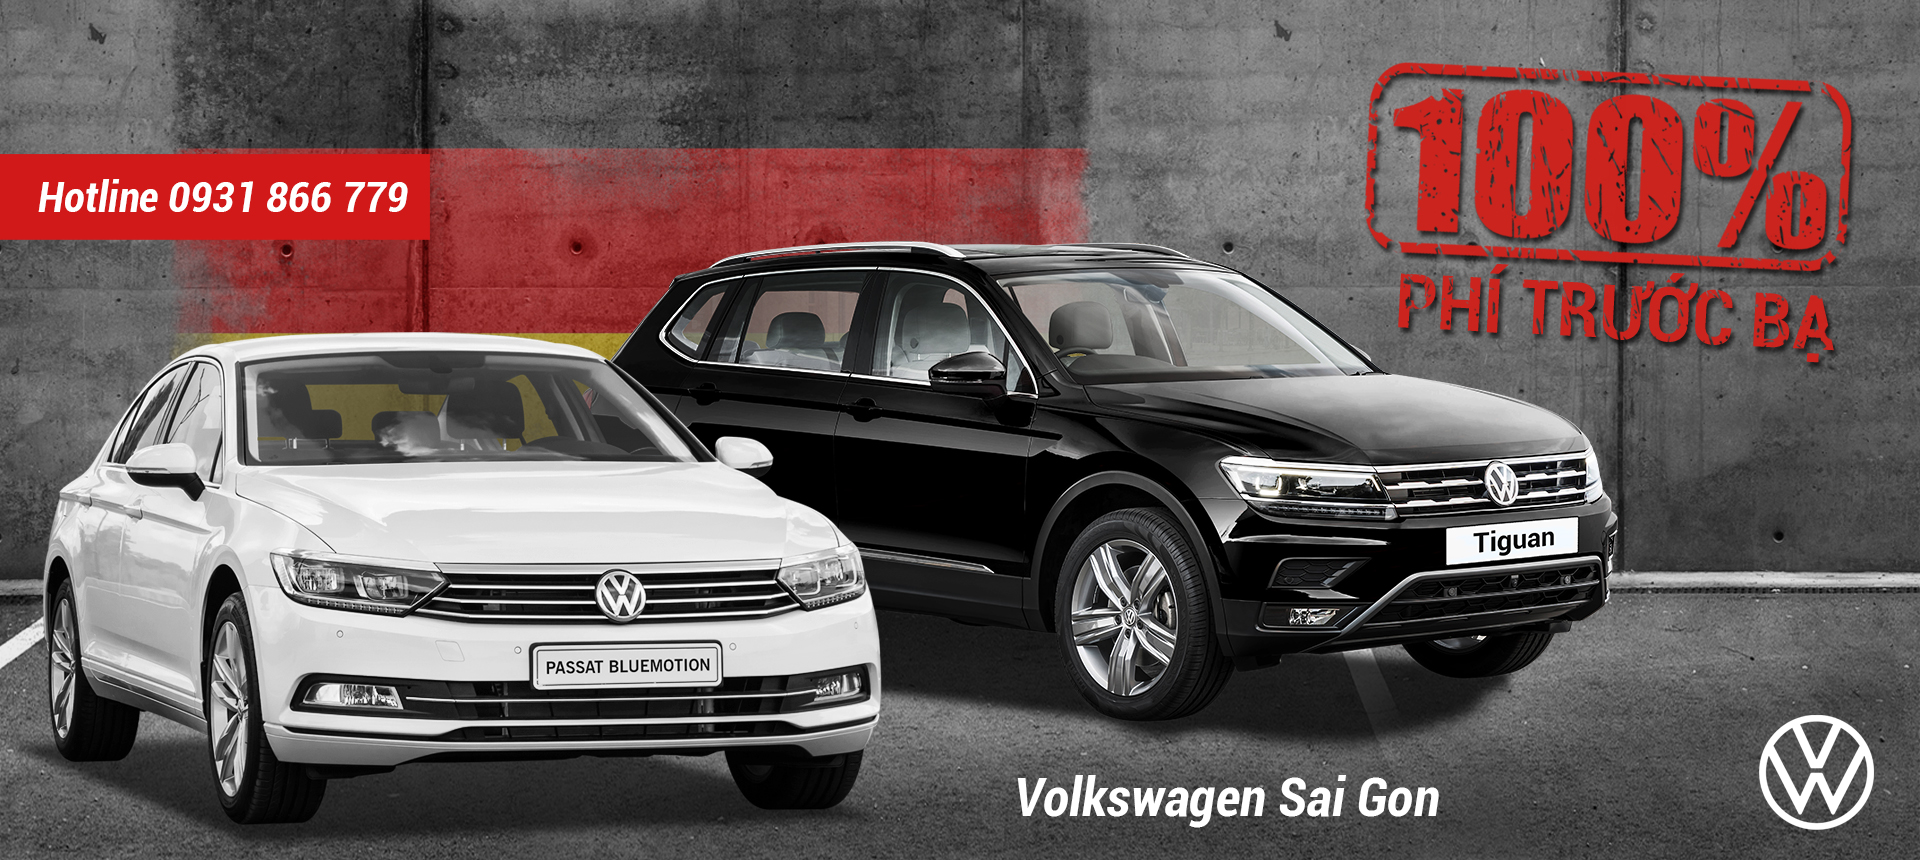 Volkswagen Promotion